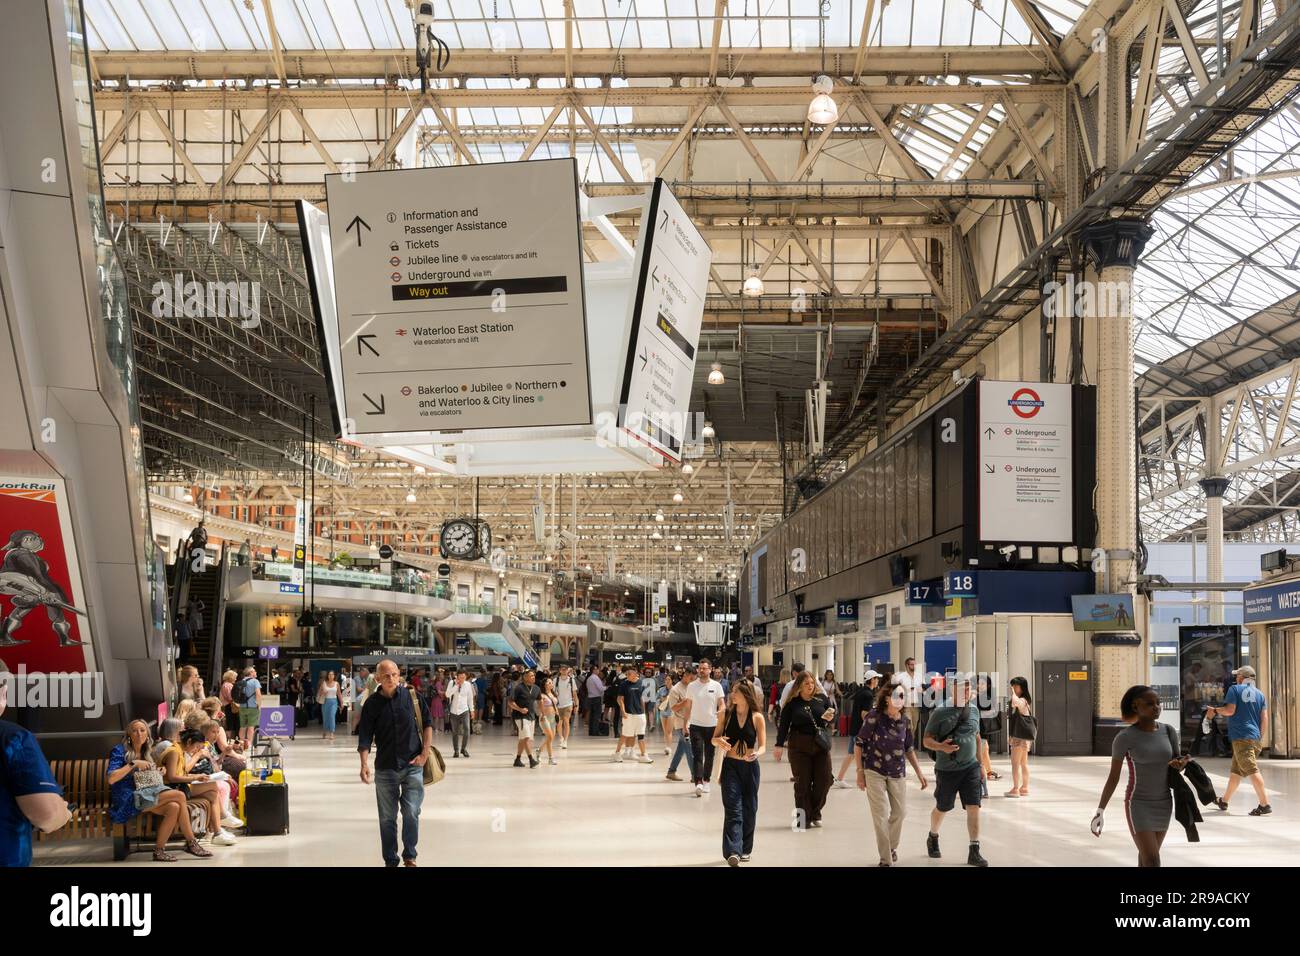 Les gens qui marchent à travers la gare de Londres Waterloo concourse et à la recherche des horaires de train. ROYAUME-UNI. Concept: Prix des billets, transport ferroviaire, navetteurs ferroviaires Banque D'Images